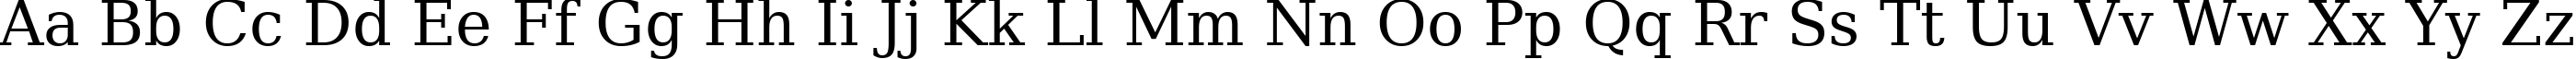 Пример написания английского алфавита шрифтом ae_AlHor